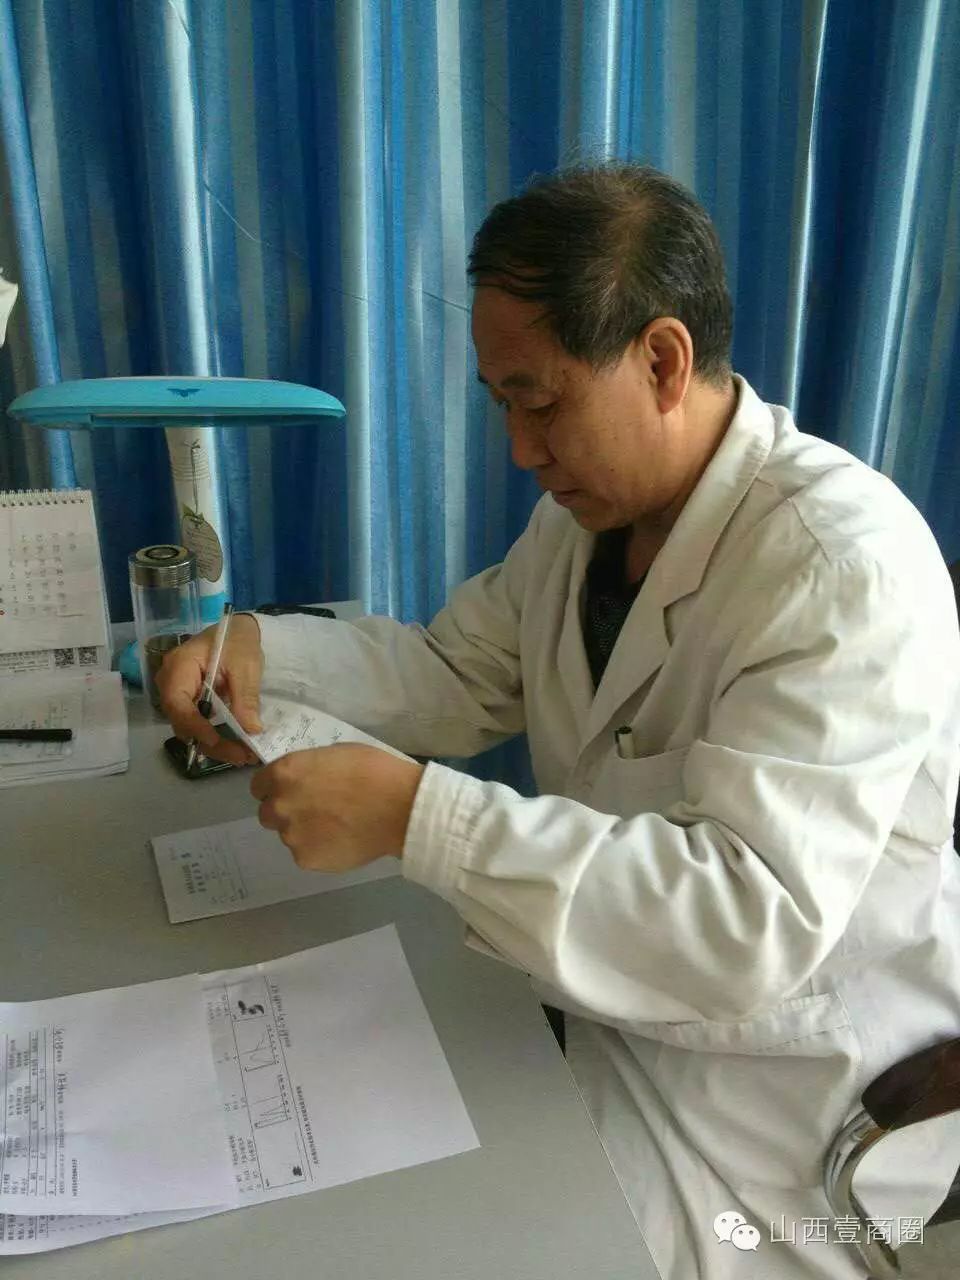 原平皮肤鼻炎患者的福音,忻州市人民医院皮肤